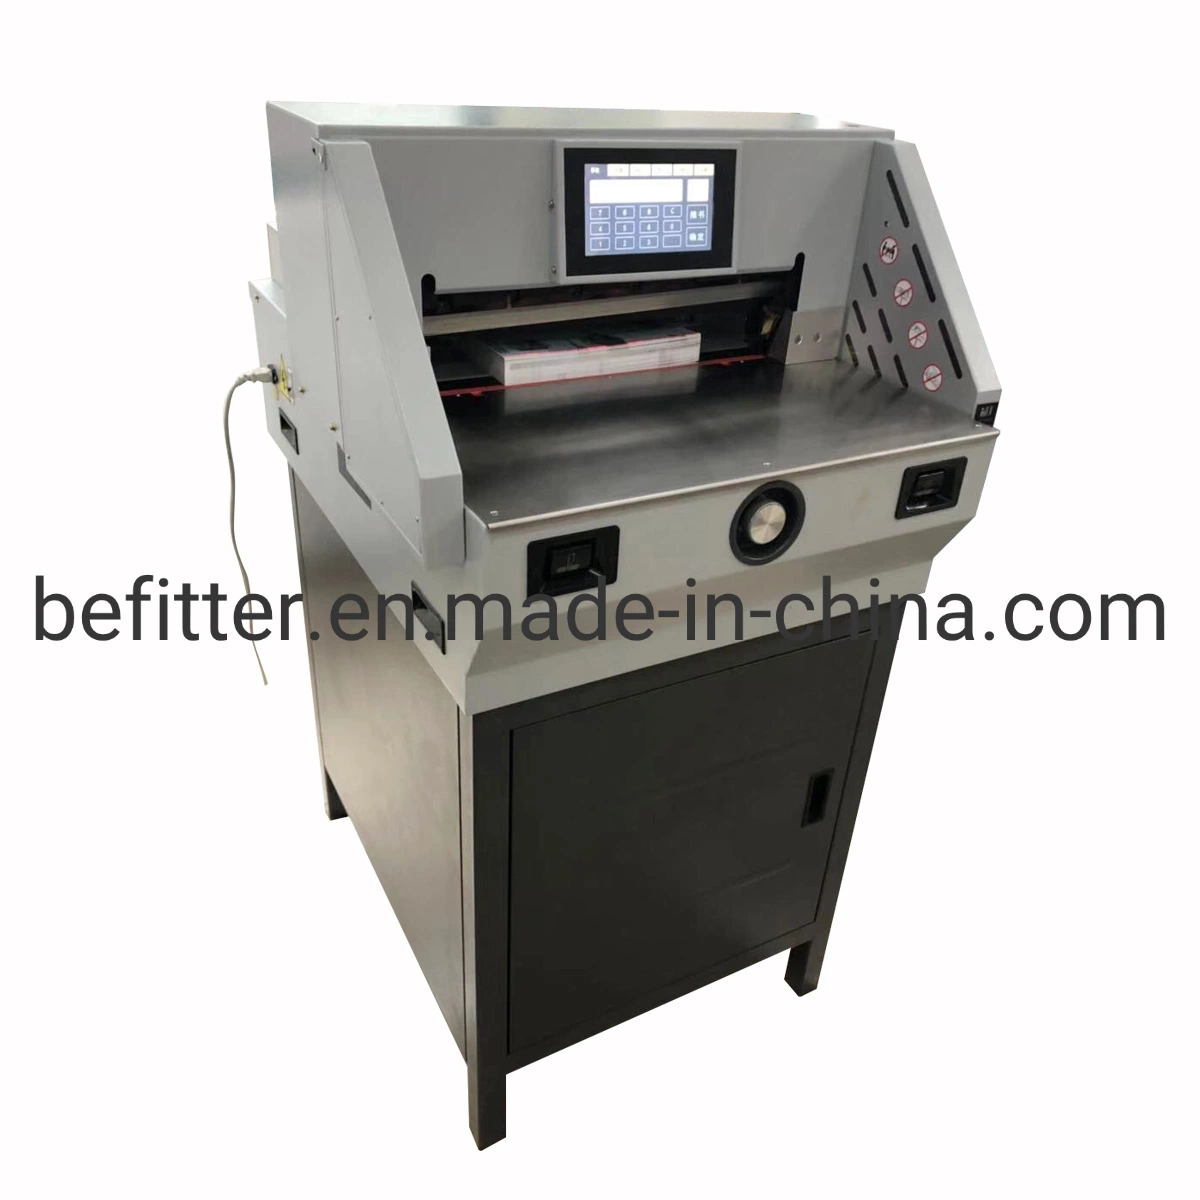 E460T 460mm 18inch Electric program control guillotine paper cutter cutting machine